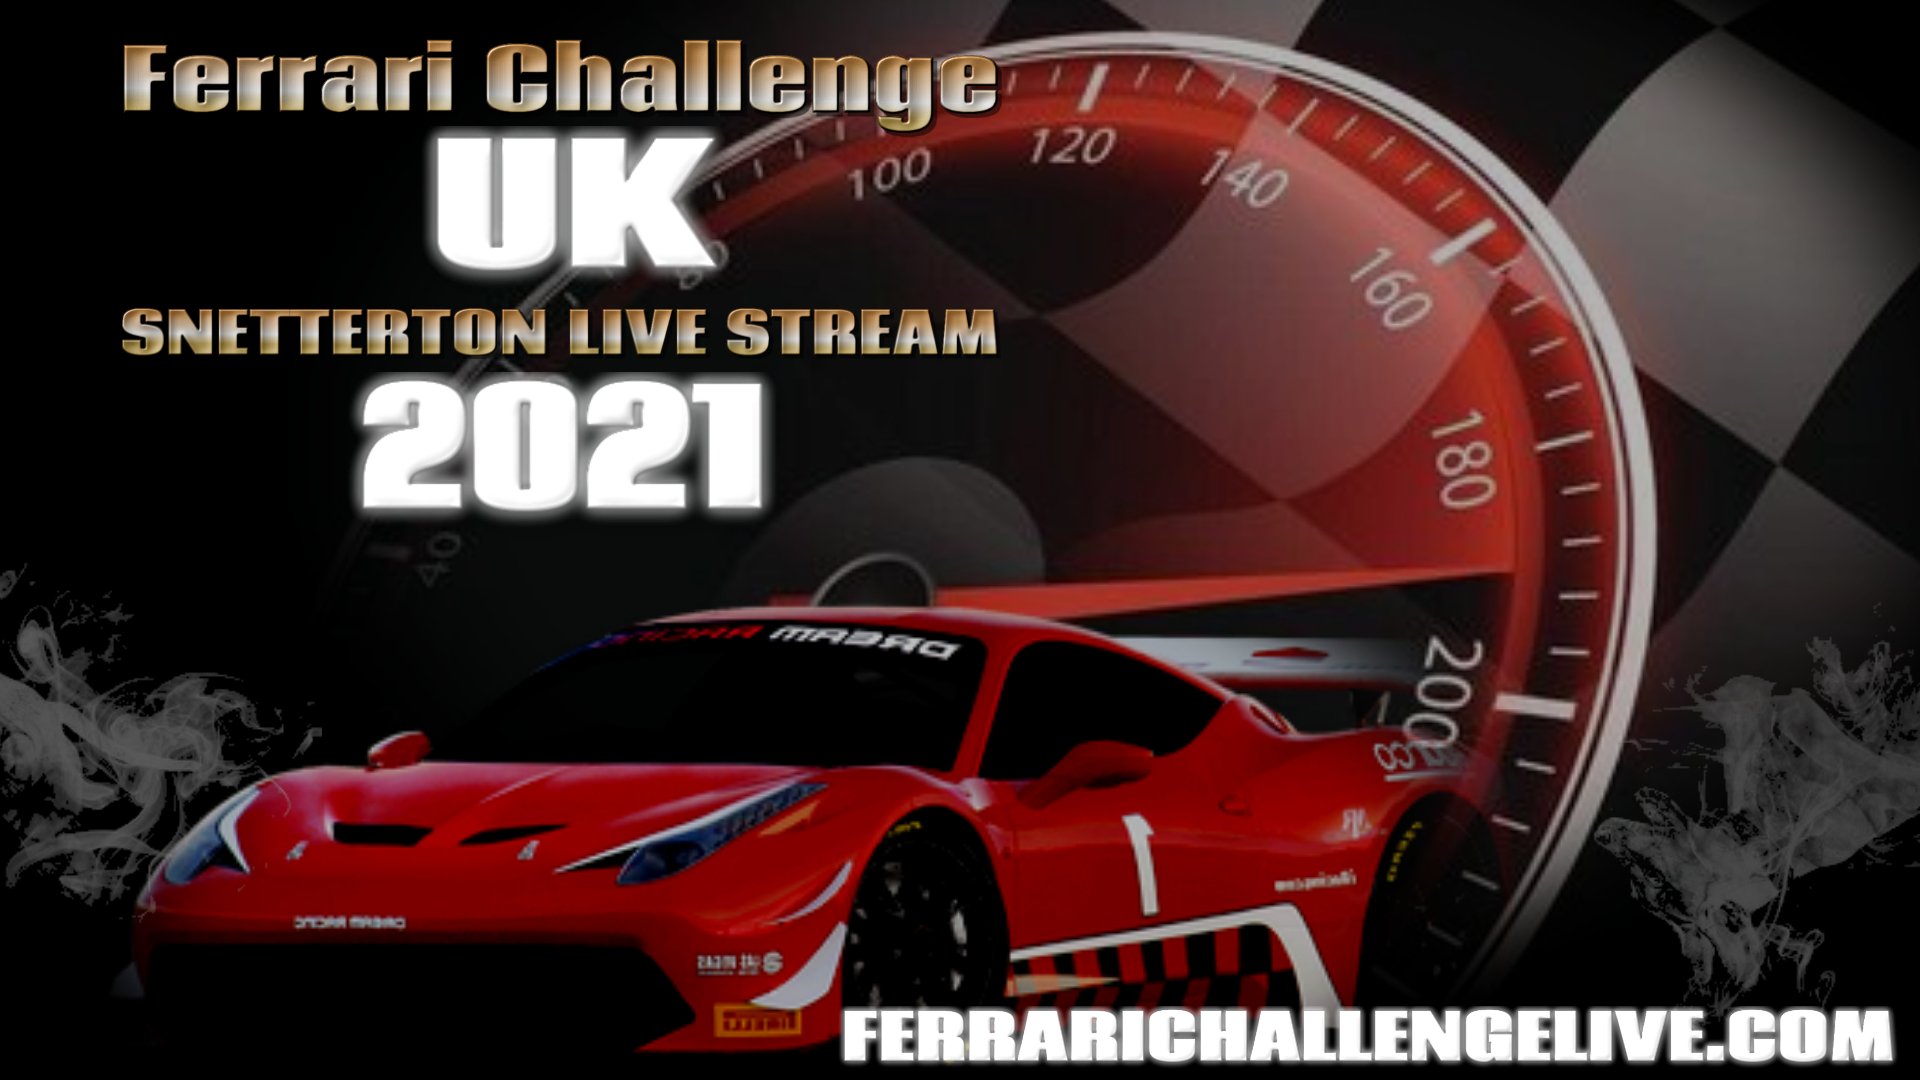 snetterton-ferrari-challenge-uk-race-live-stream